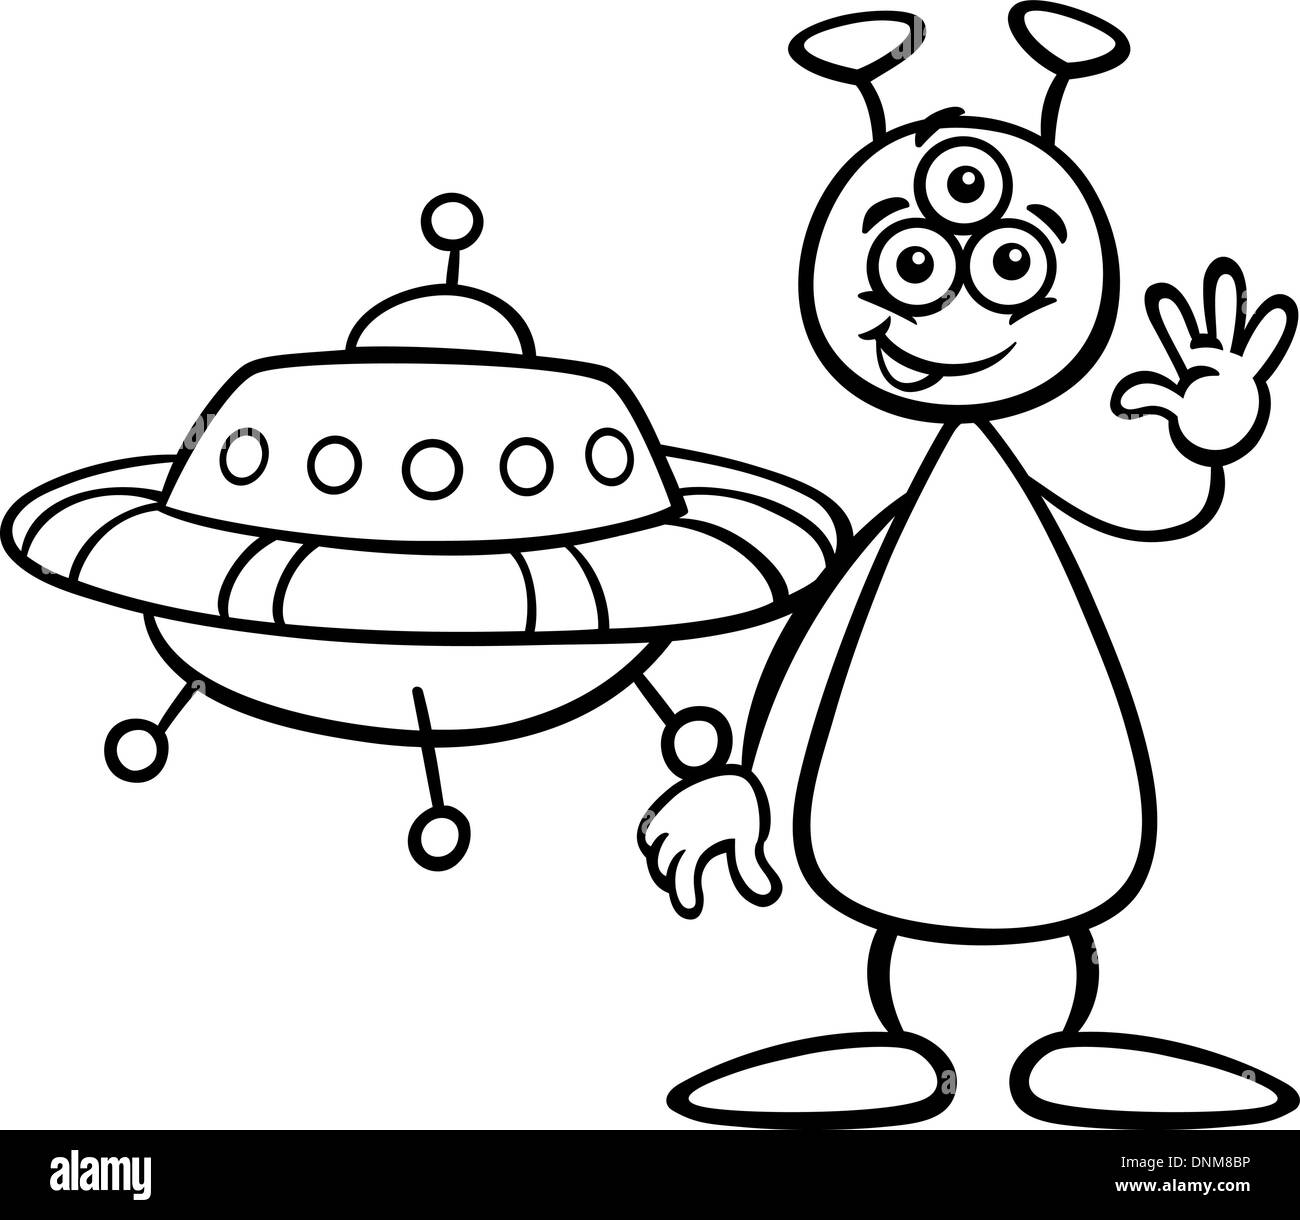 Schwarz / Weiß Cartoon Illustration von lustigen Alien oder Martian Comic-Figur mit Ufo oder Raumschiff für Malbuch Stock Vektor